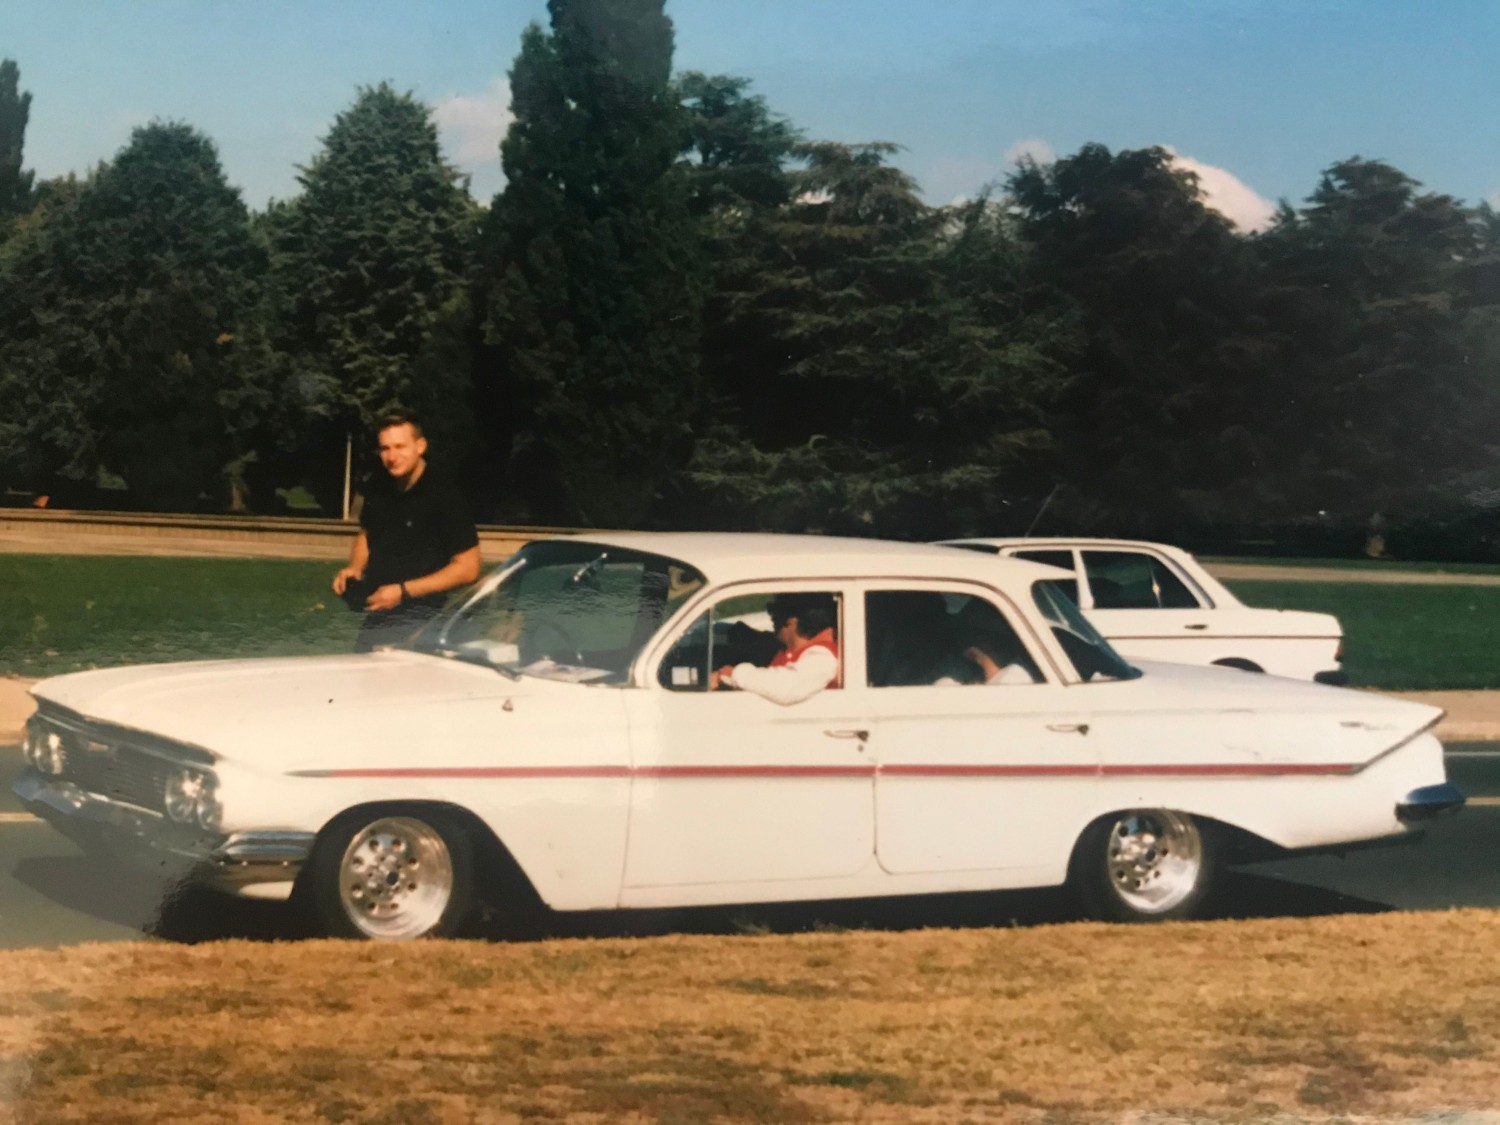 1961 Chevrolet Belair